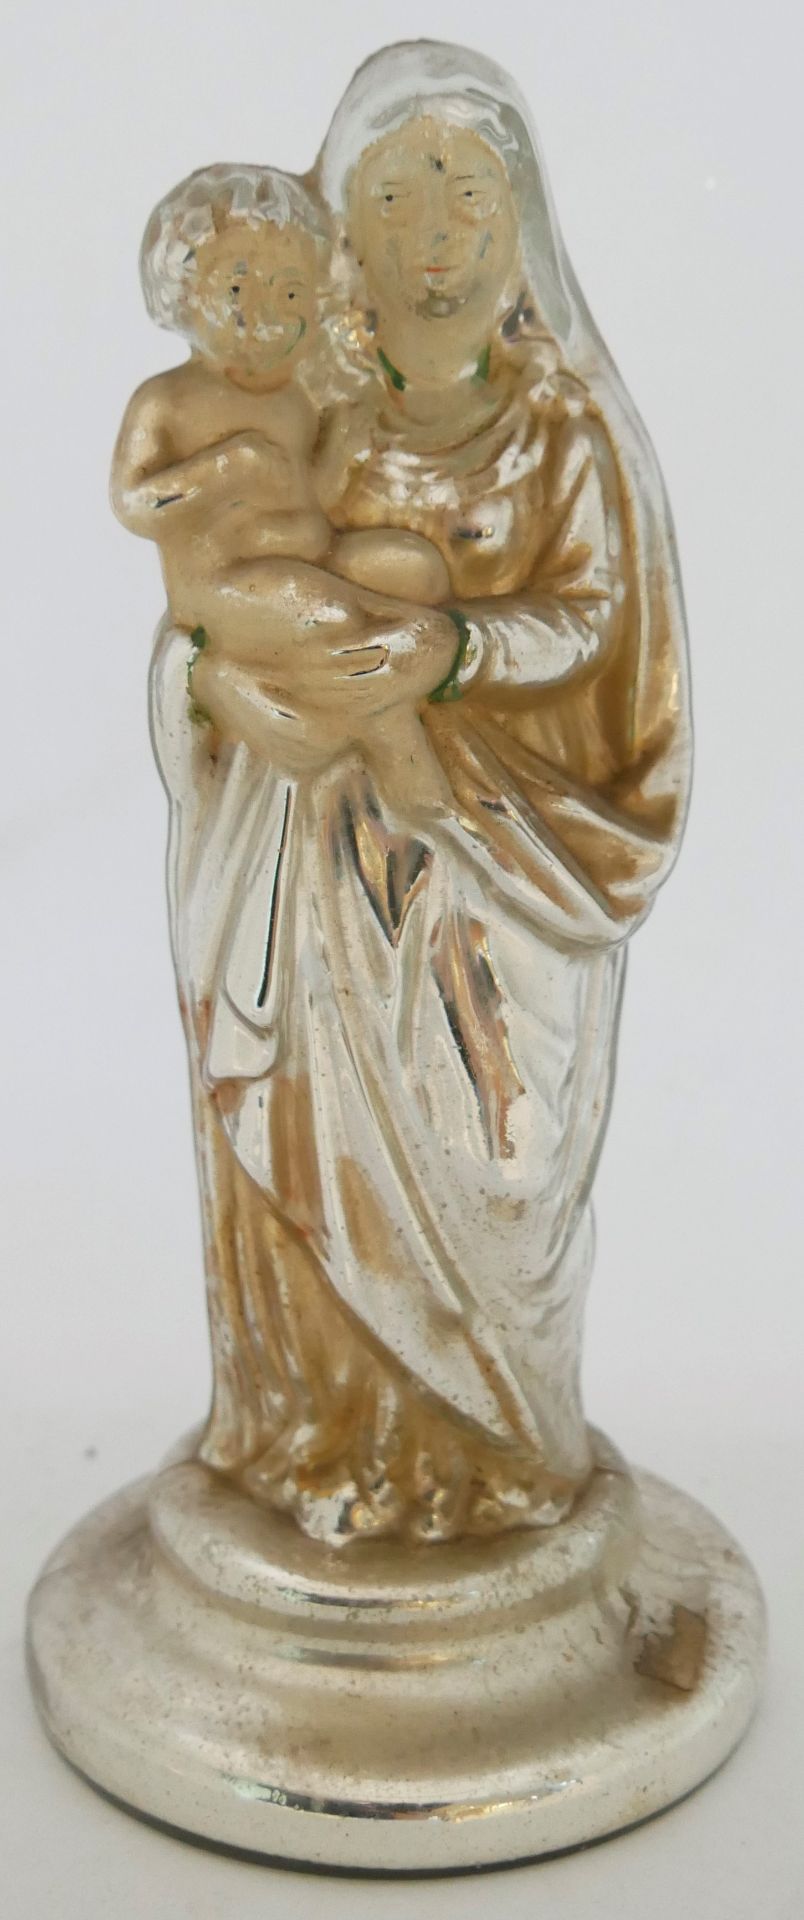 Aus Sammlung - antike Madonna mit Jesuskind auf dem Arm aus Bauernsilber, Bemalung teilweise noch